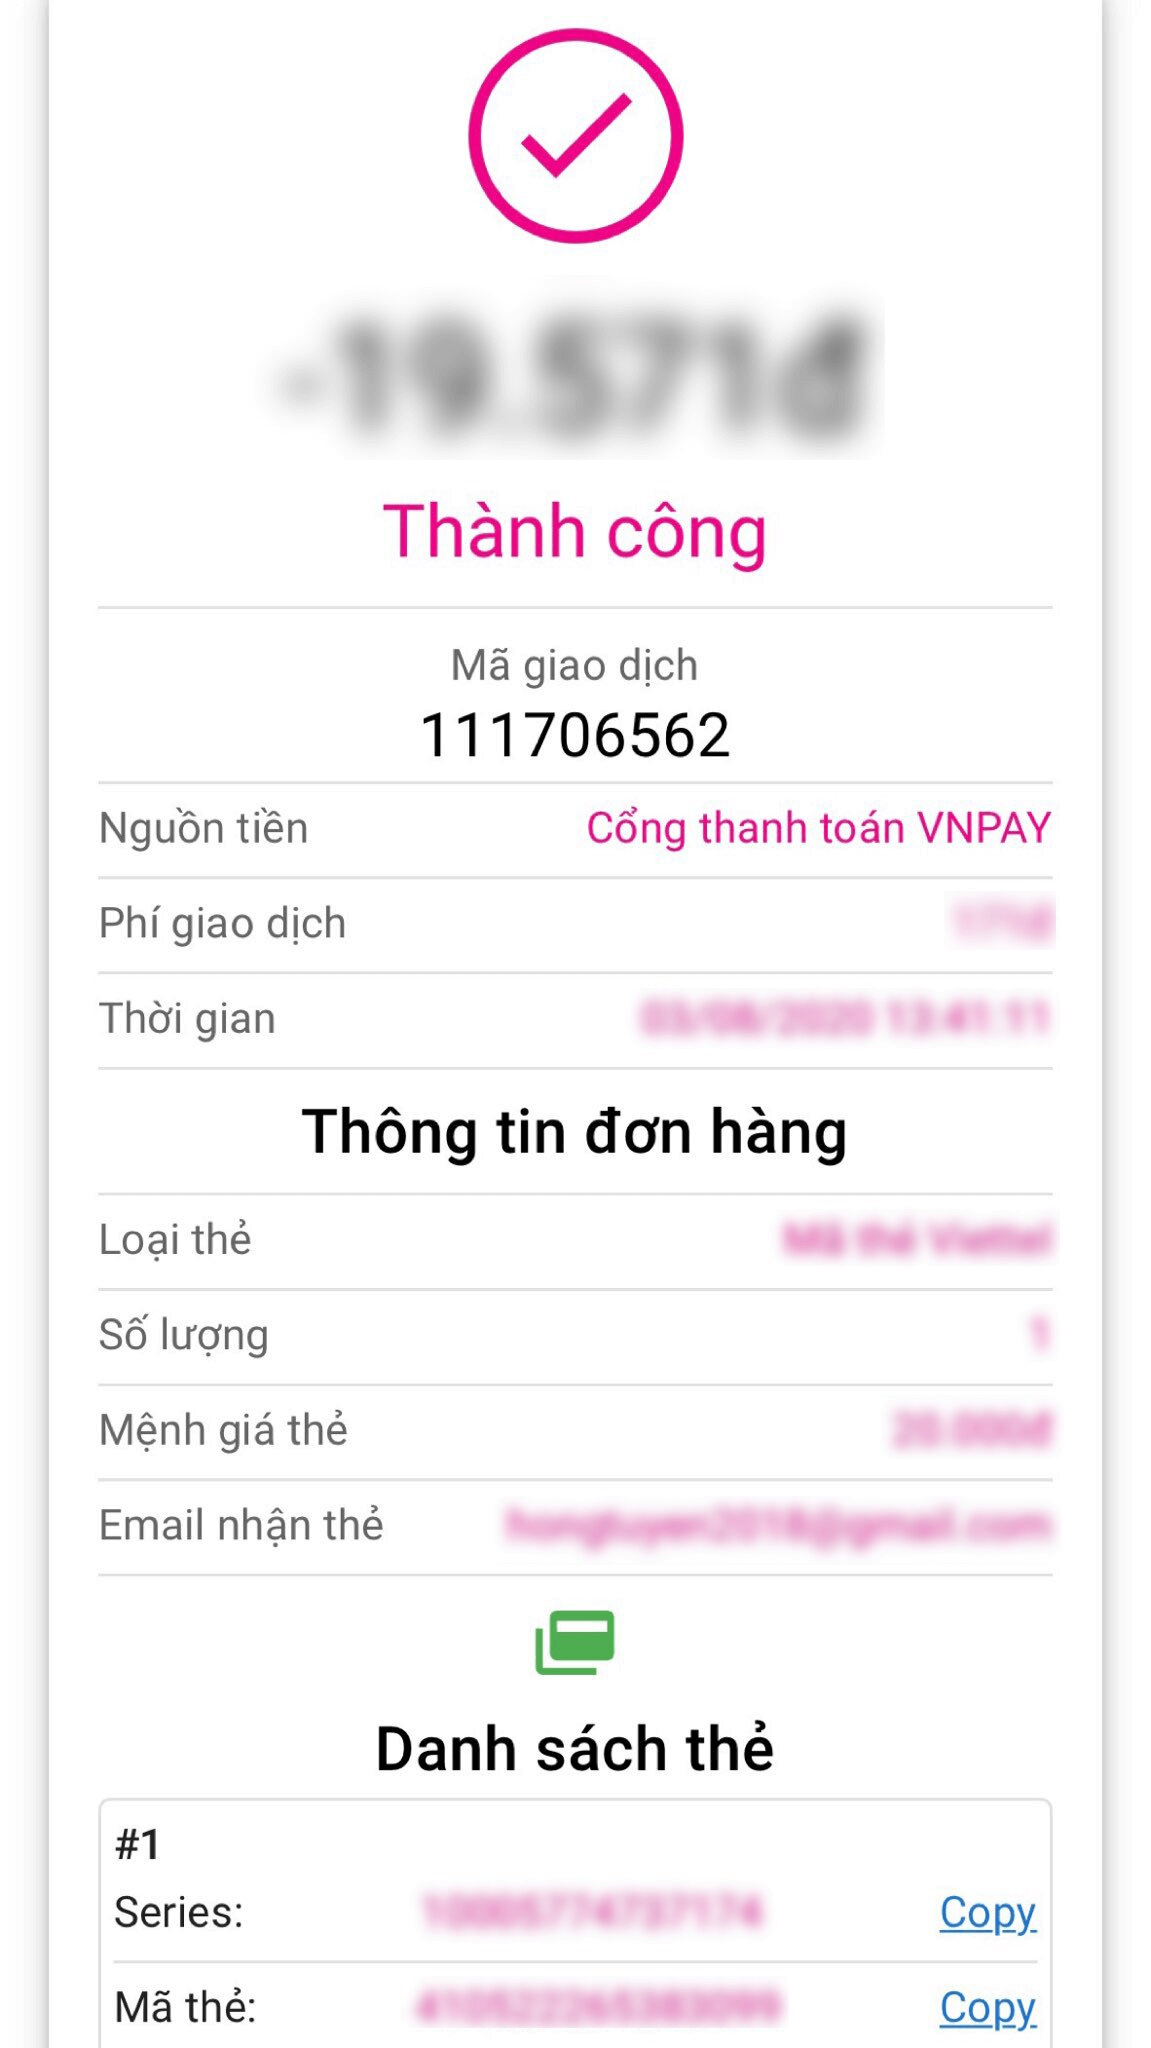 mua-the-cao-dien-thoai-thanh-toan-bang-vnpay-qr-7